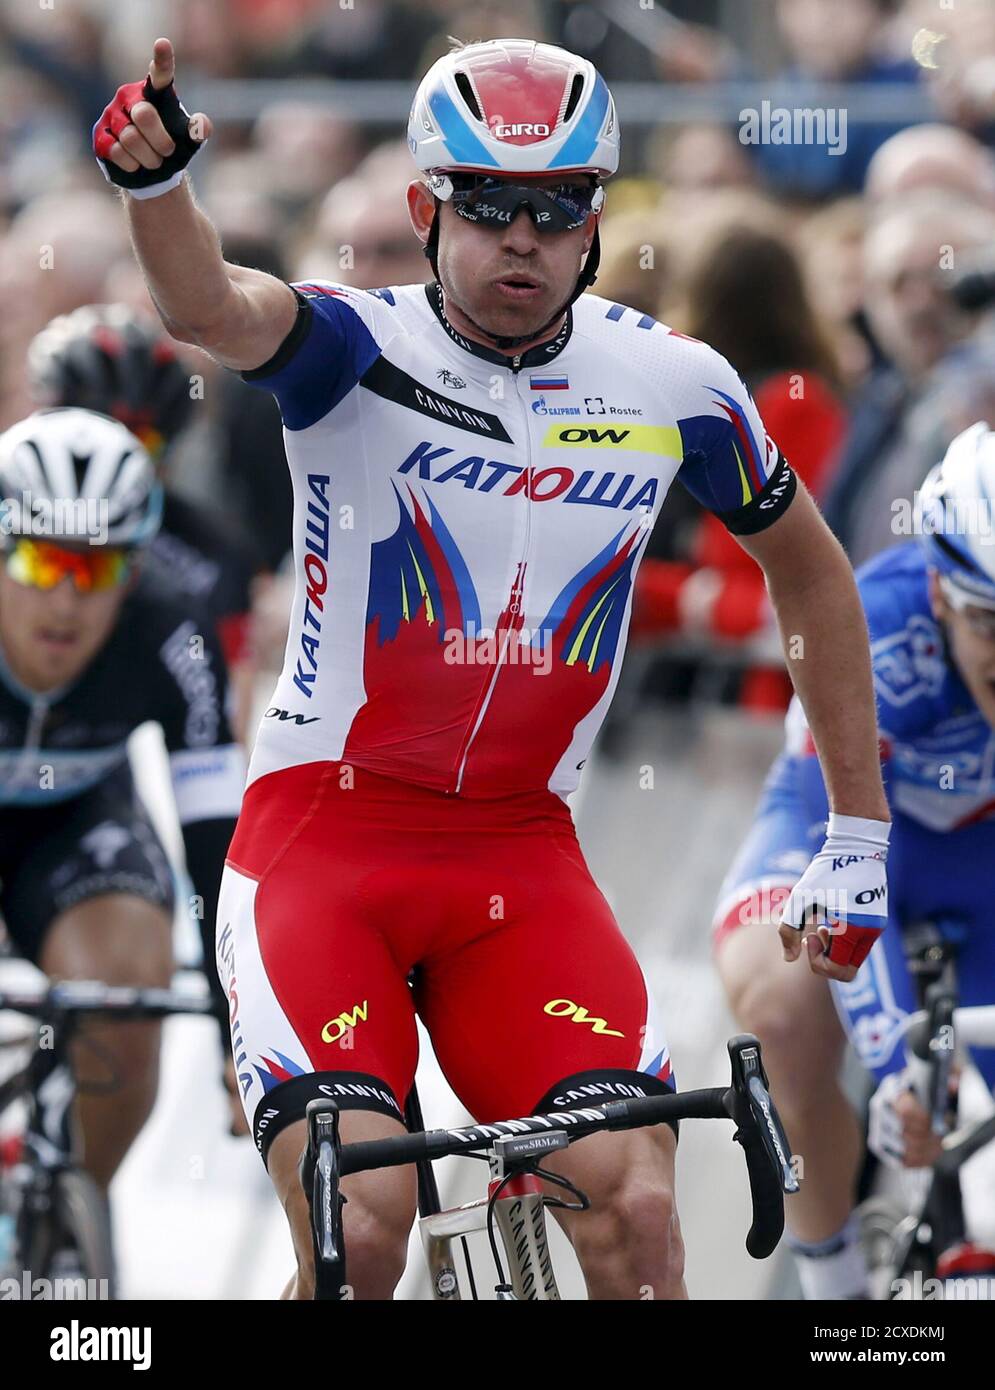 El jinete del equipo Katusha Alexander Kristoff de Noruega celebra ganar la  103ra carrera de ciclismo Scheldeprijs/Grand Prix de l'Escaut en Schoten el  8 de abril de 2015. REUTERS/Francois Lenoir Fotografía de